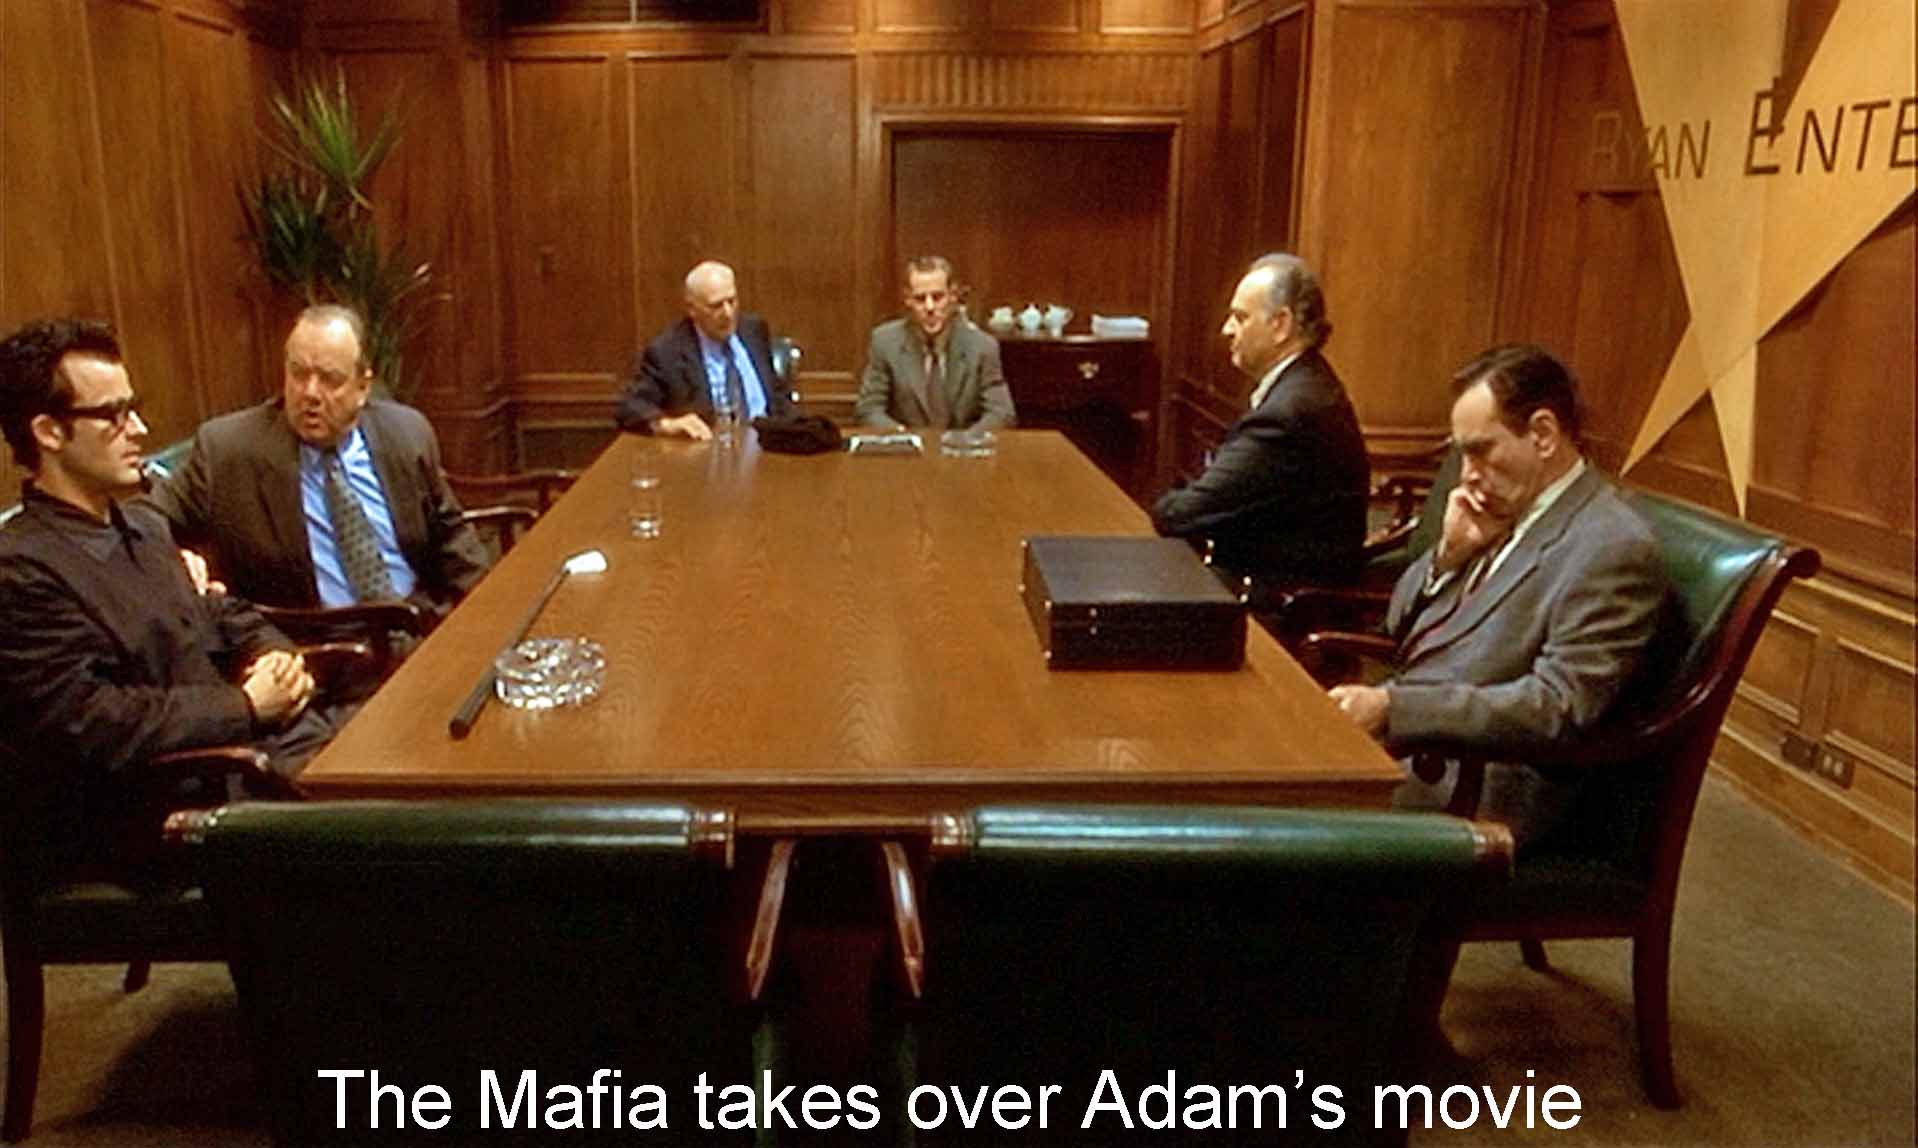 The Mafia takes over Adam's movie